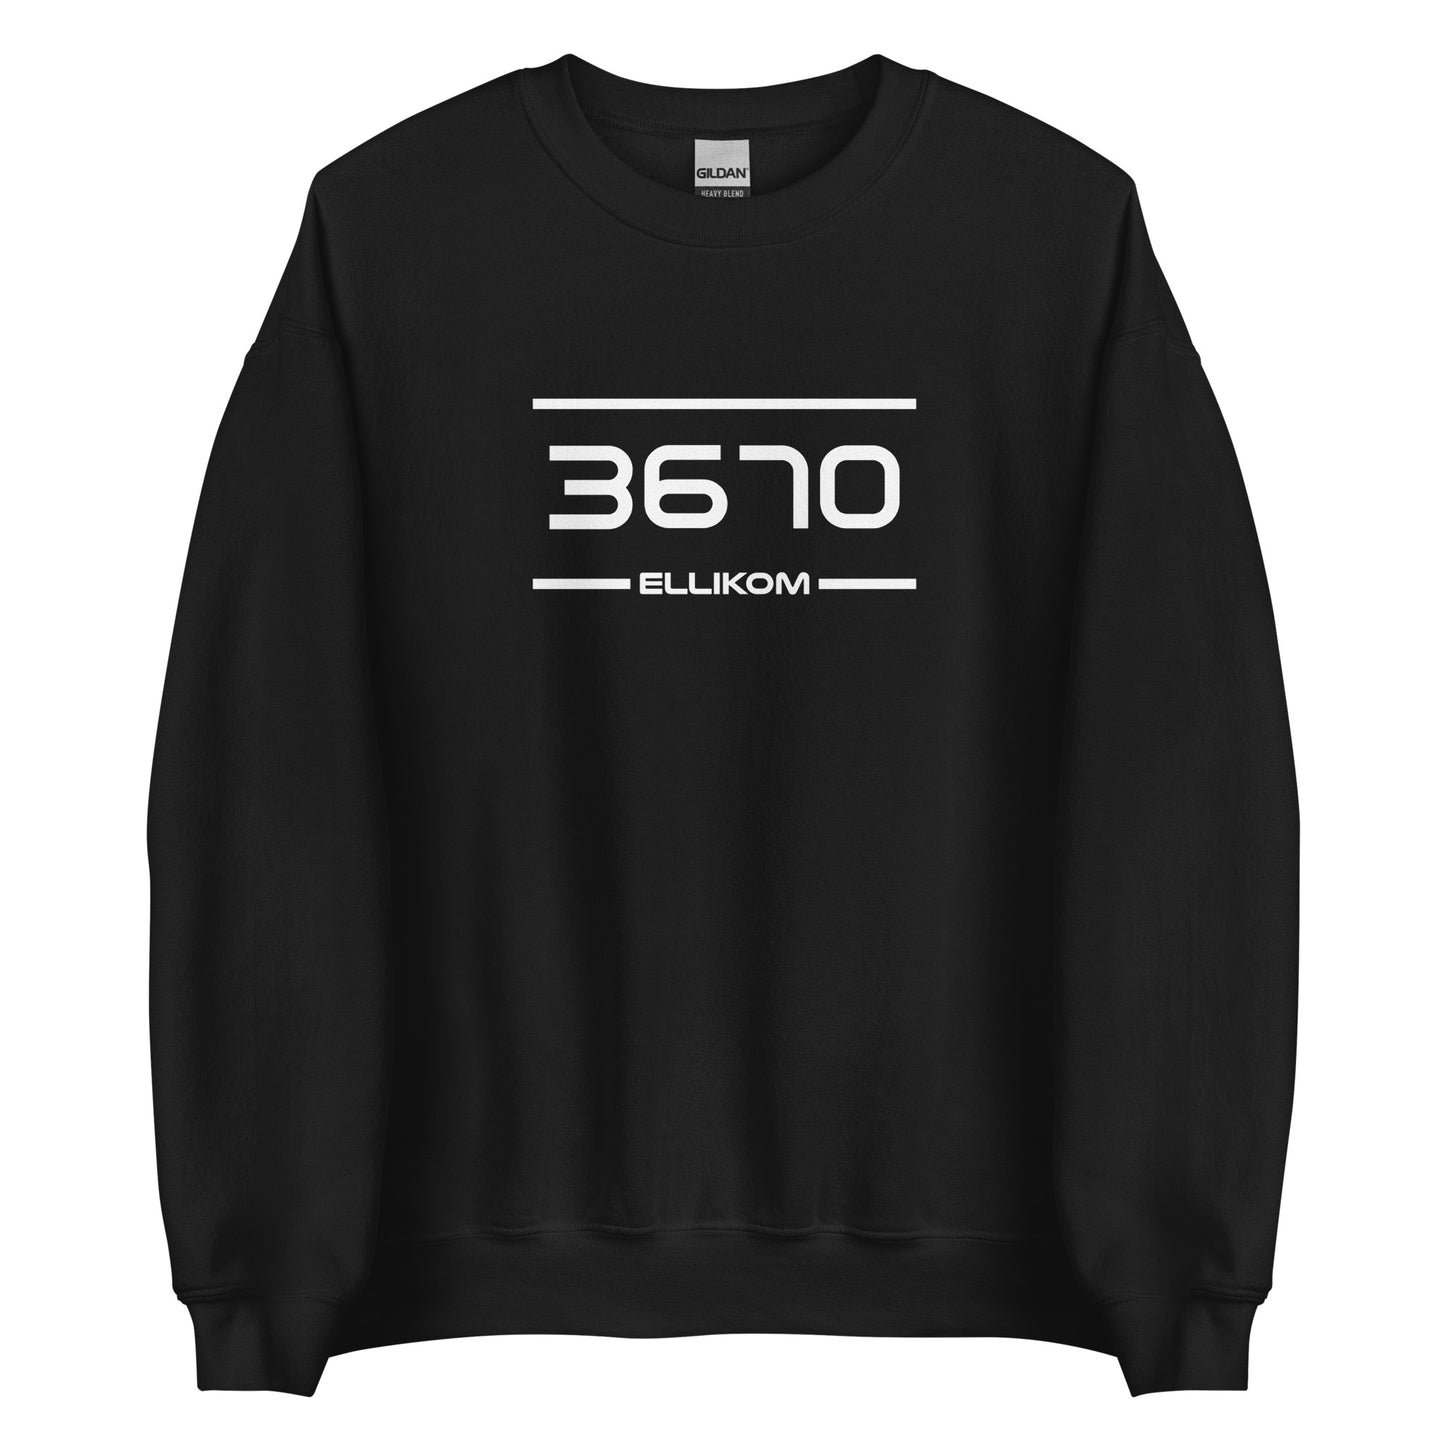 Sweater - 3670 - Ellikom (M/V)